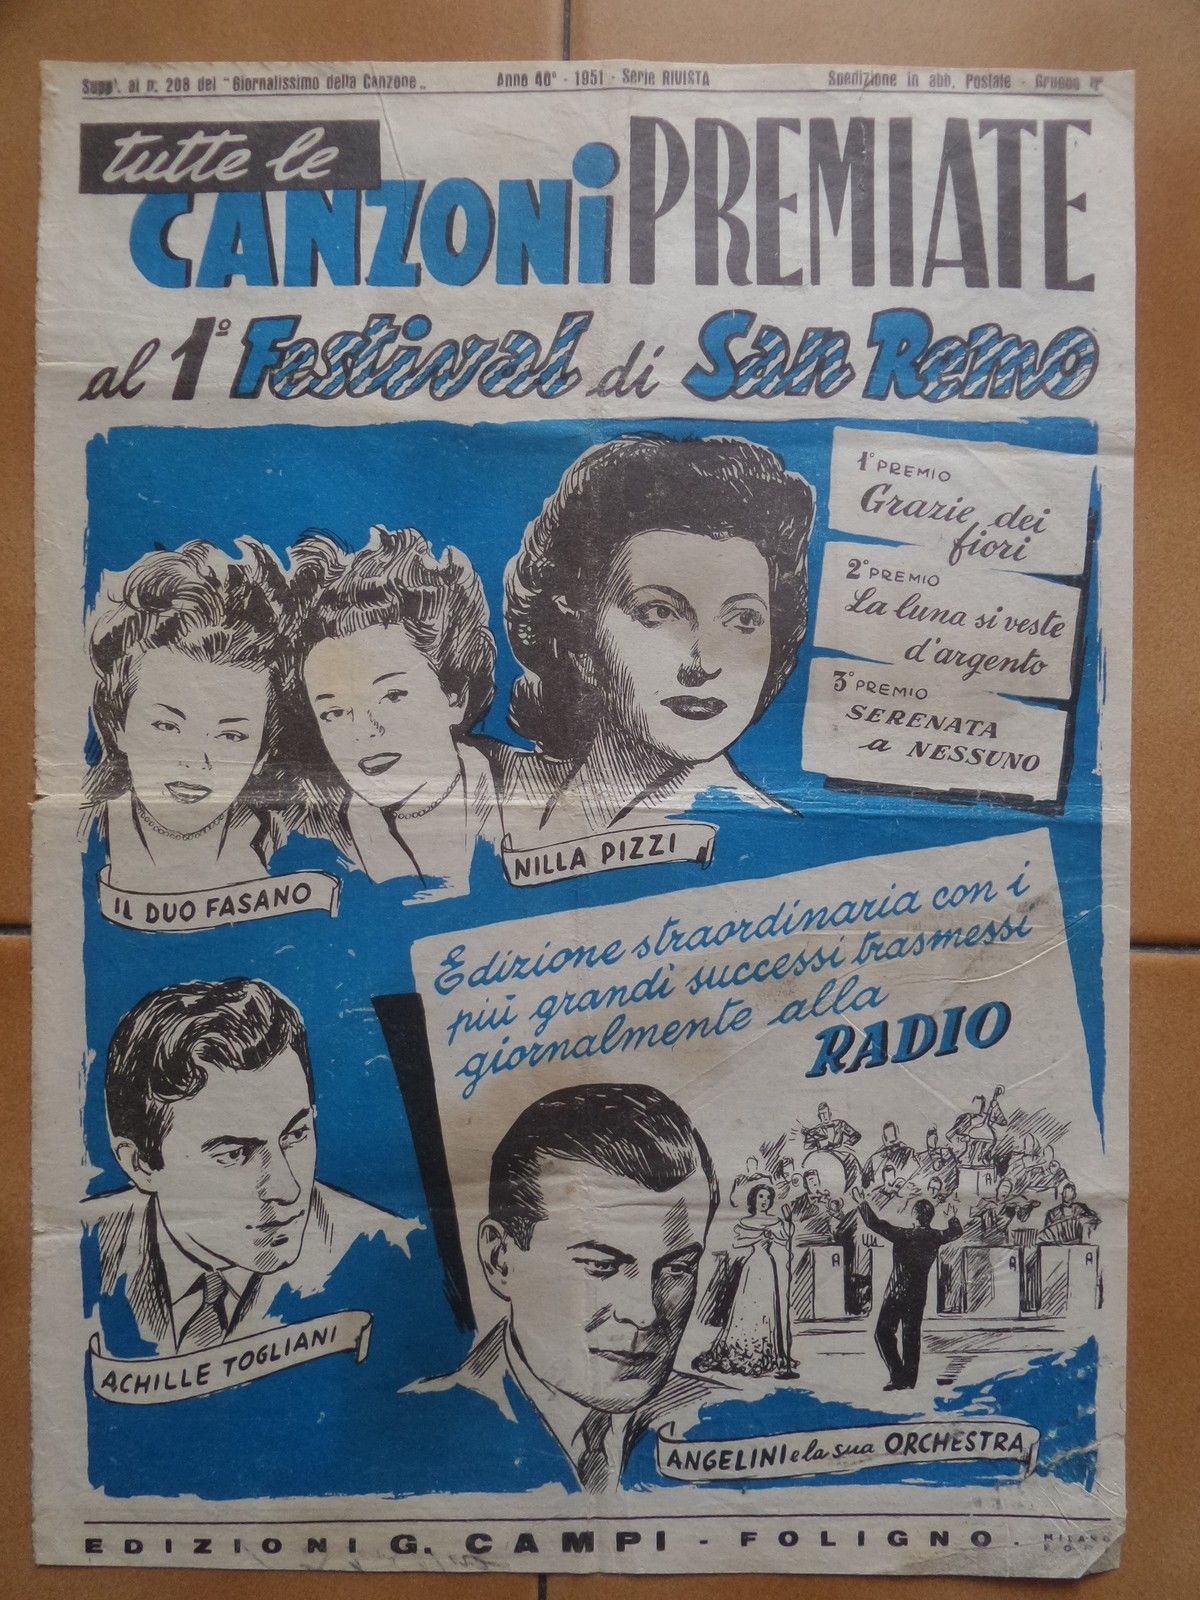 Tutte le CANZONI PREMIATE al 1° festival di SANREMO 1951 ediz. Campi – Foligno